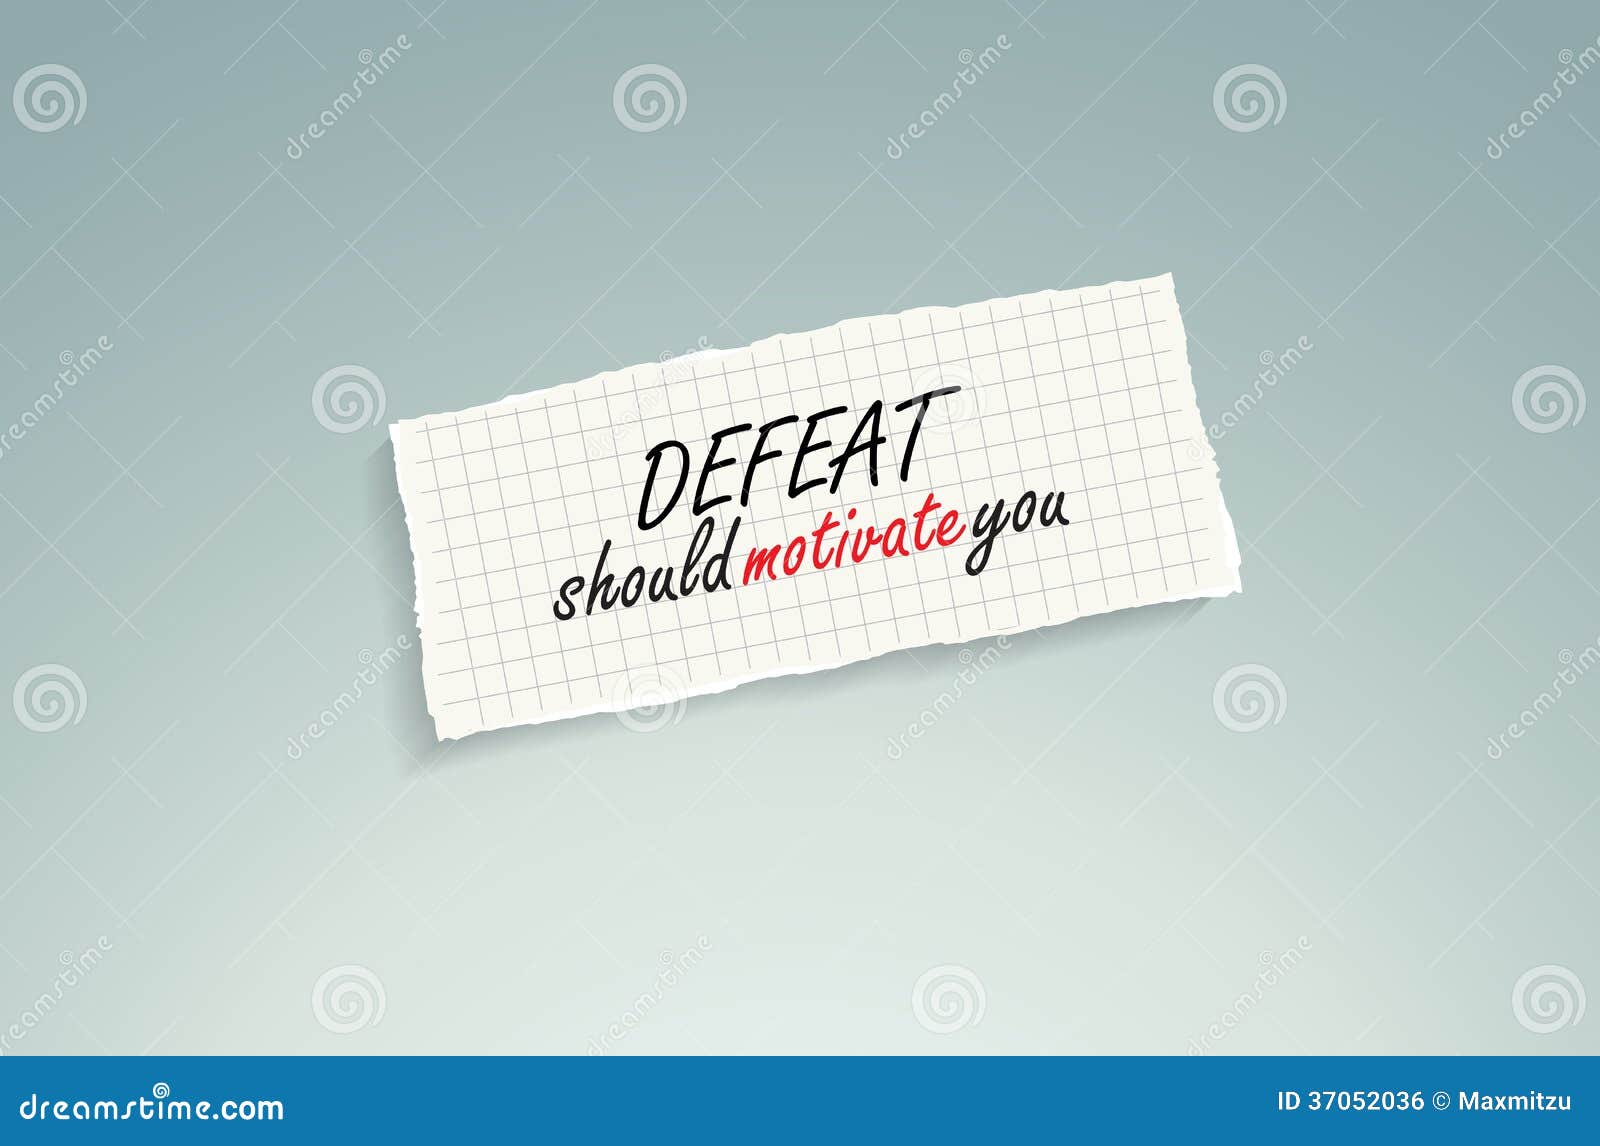 defeat should motivate you.